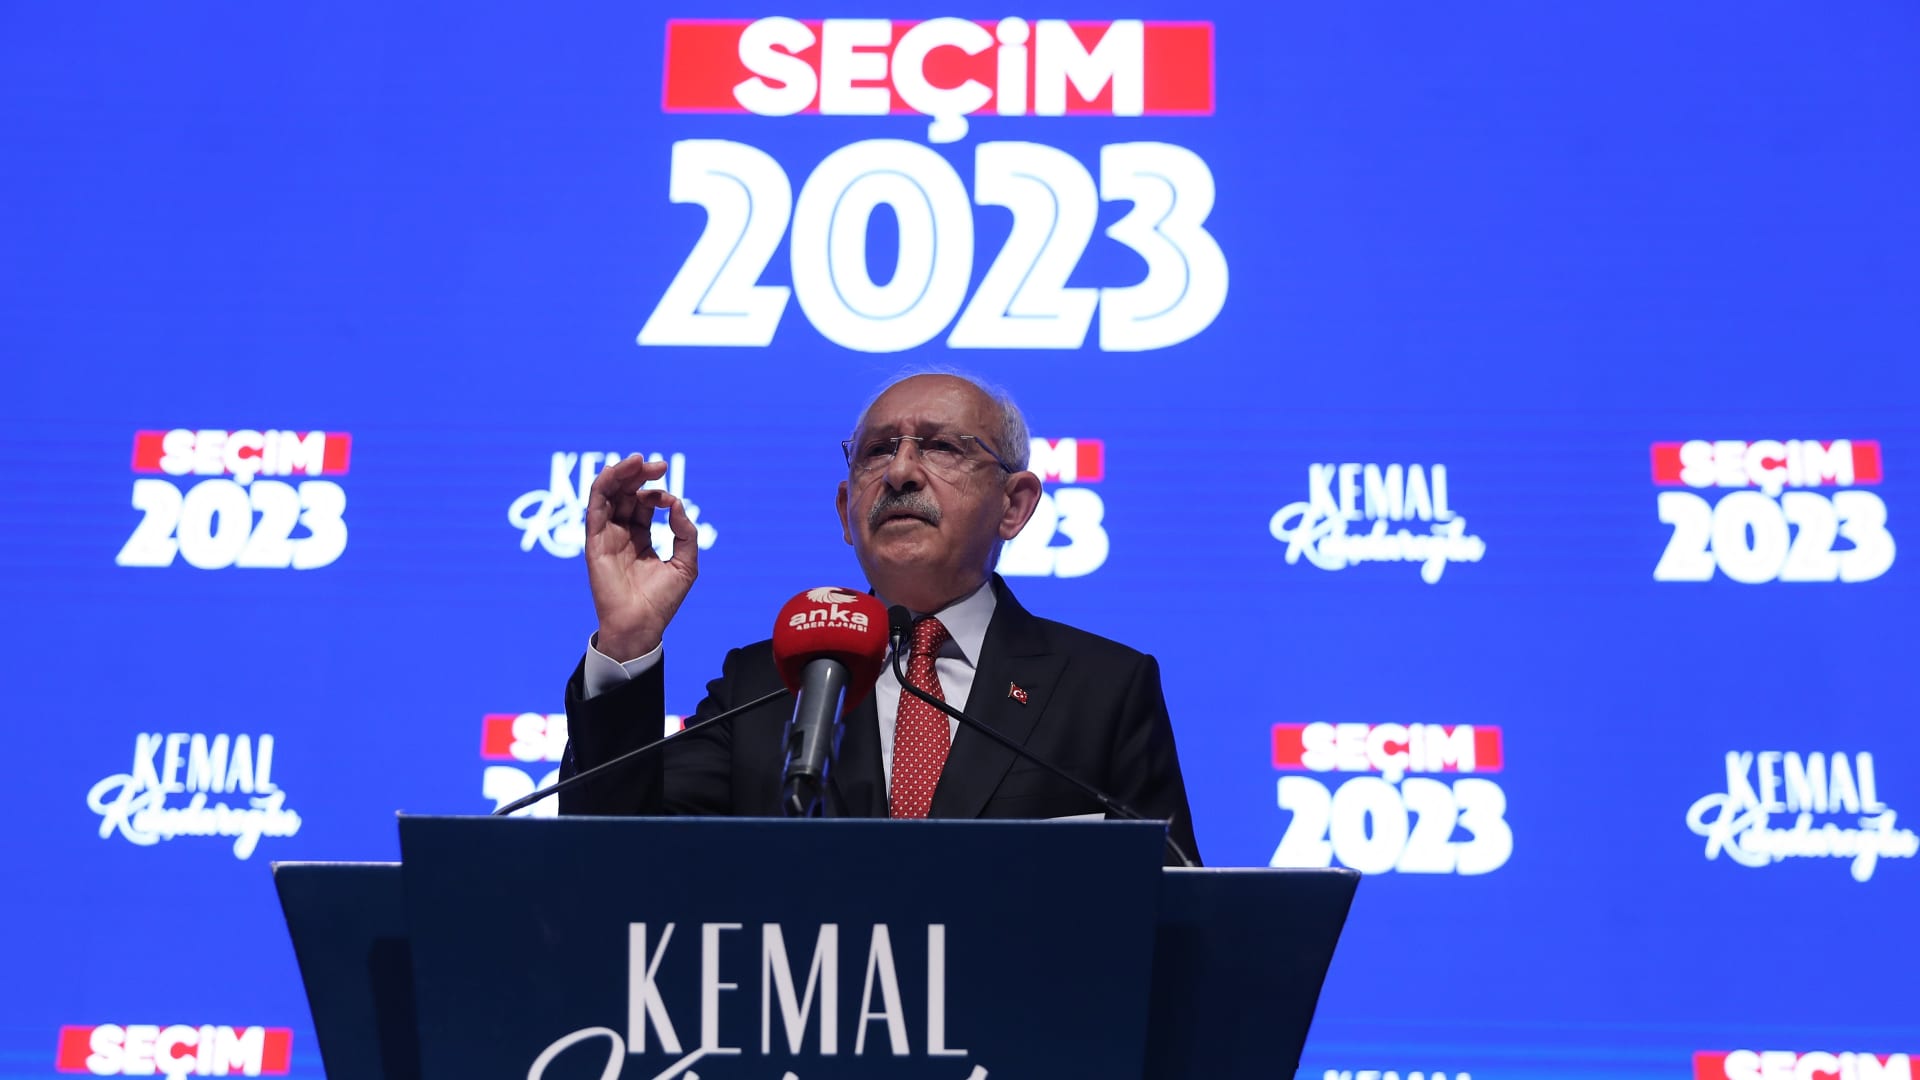 كليتشدار أوغلو منافس أردوغان يتعهد بمواصلة النضال حتى تكون هناك "ديمقراطية حقيقية" في تركيا